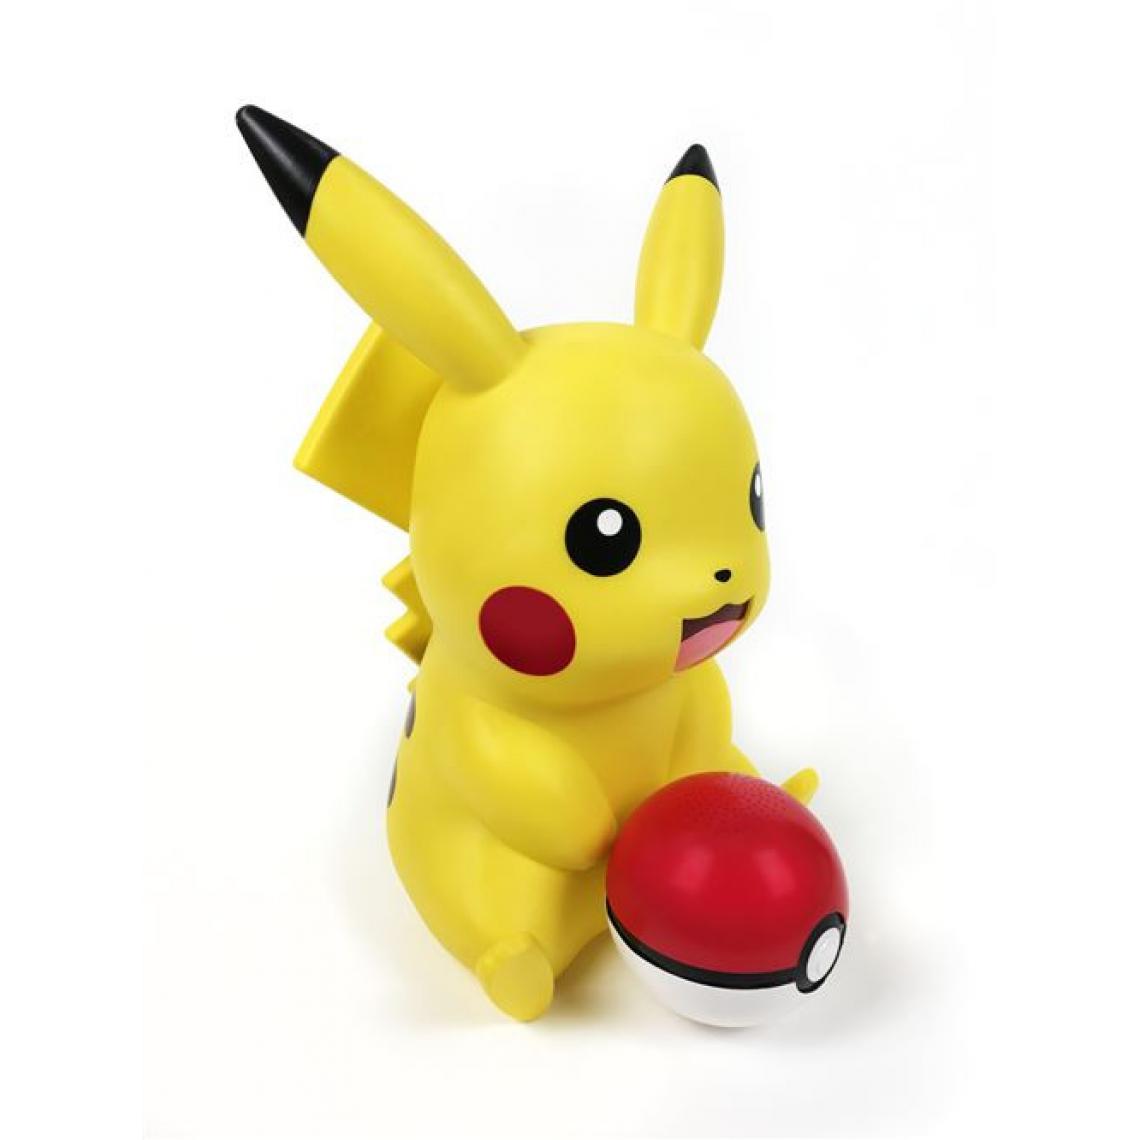 Teknofun - Lampe Teknofun Pikachu et enceinte Poke ball sans fil - Animaux